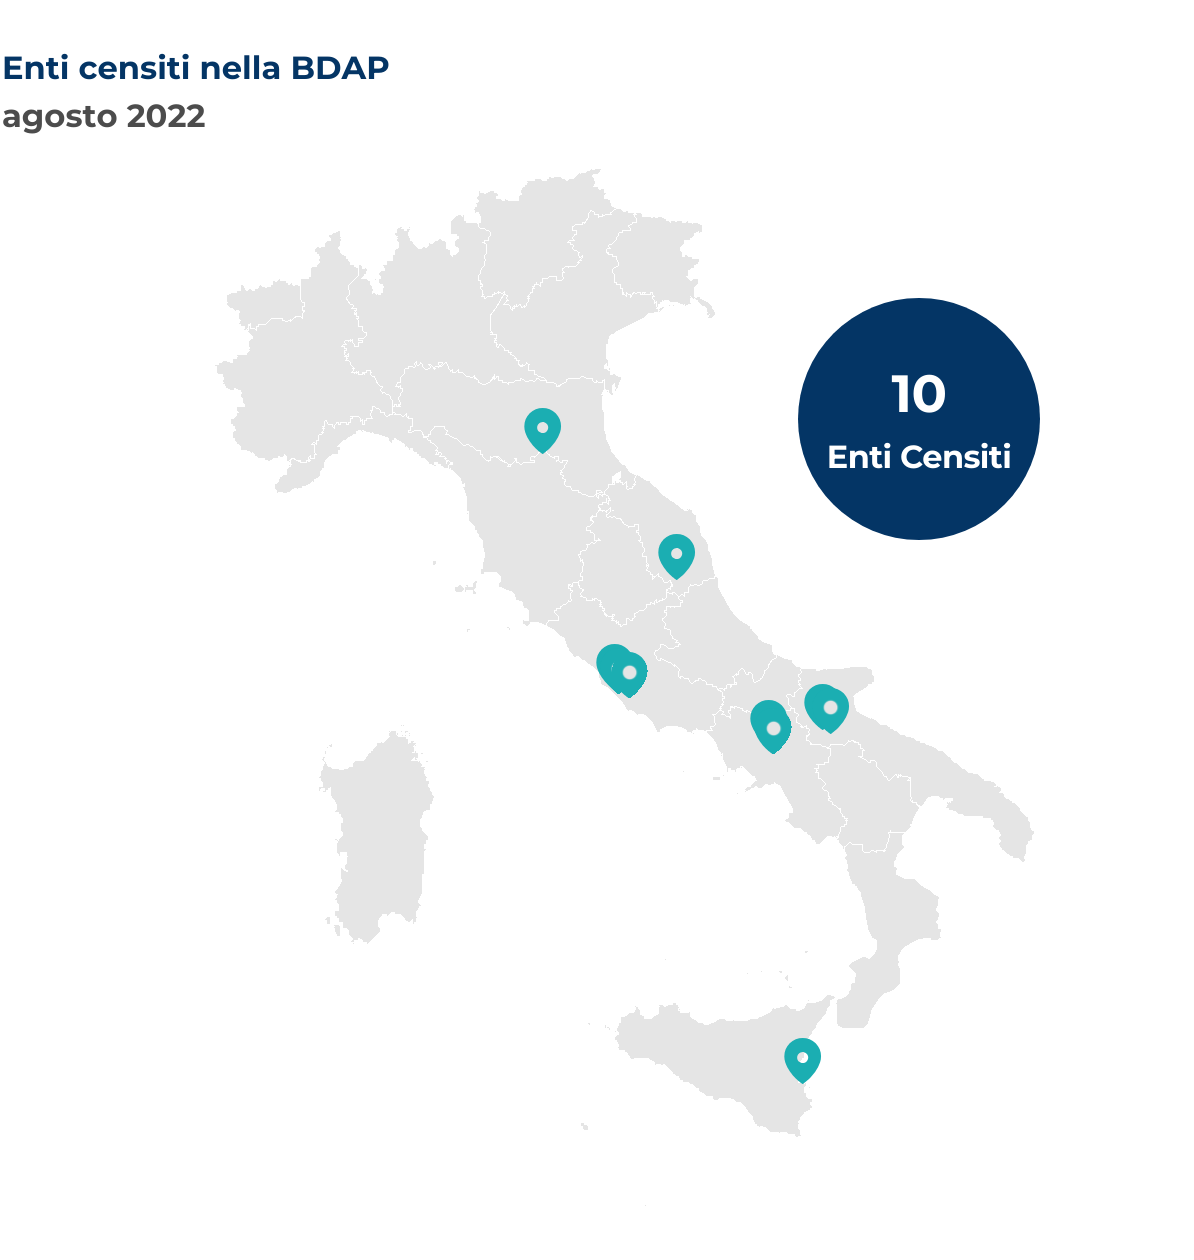 Mappa dell'Italia che mostra la localizzazione per Comune degli enti censiti nella BDAP nel mese di agosto 2022.